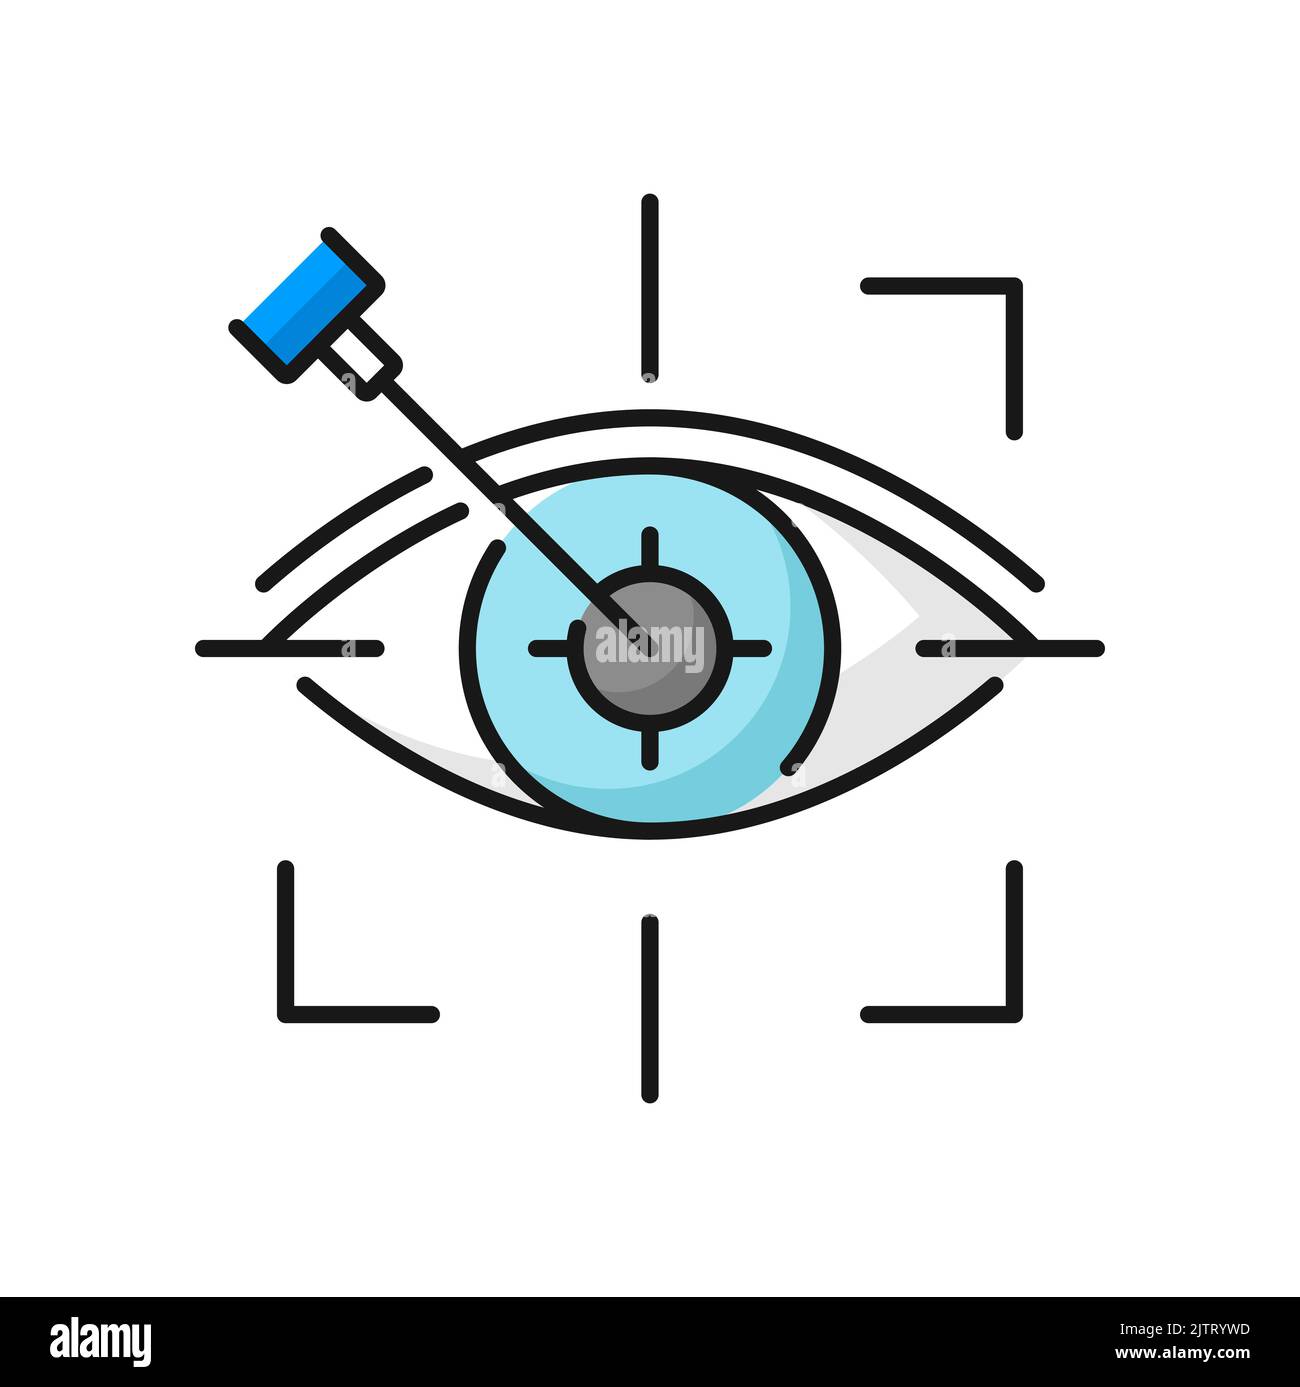 Augenlaserchirurgie, Augenheilkunde lasik-Behandlungssymbol, Vektor-Vision-medizinische Korrektur. Liniensymbol für Augenlaseroperationen bei Hornhauterkrankungen oder Myopieoperationen auf der Netzhaut, refraktive Augenkorrektur Stock Vektor